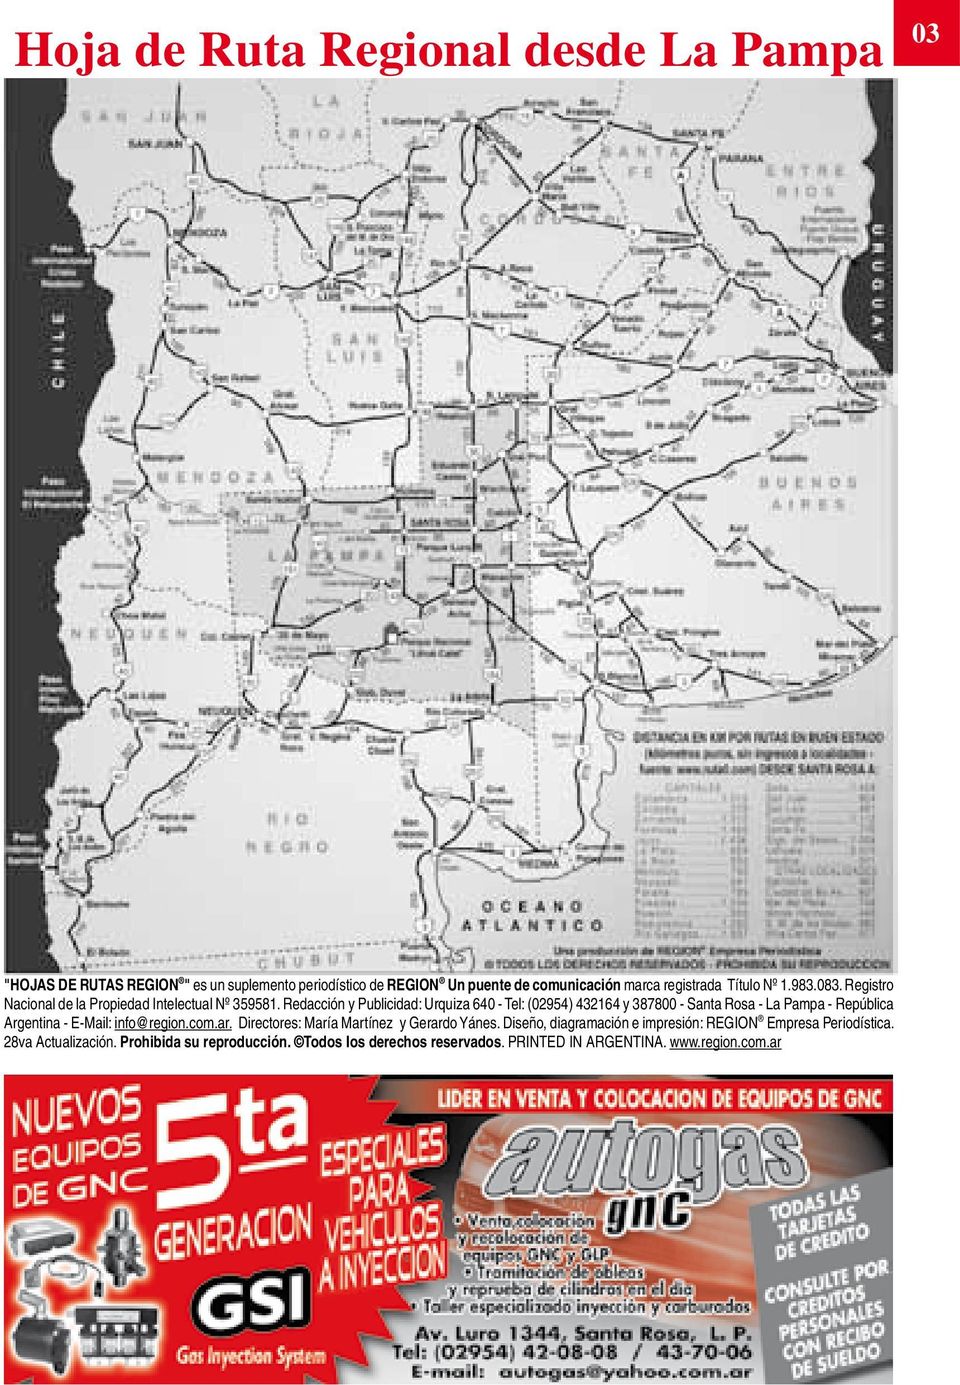 Redacción y Publicidad: Urquiza 640 - Tel: (02954) 432164 y 387800 - Santa Rosa - La Pampa - República Argentina - E-Mail: info@region.com.ar.